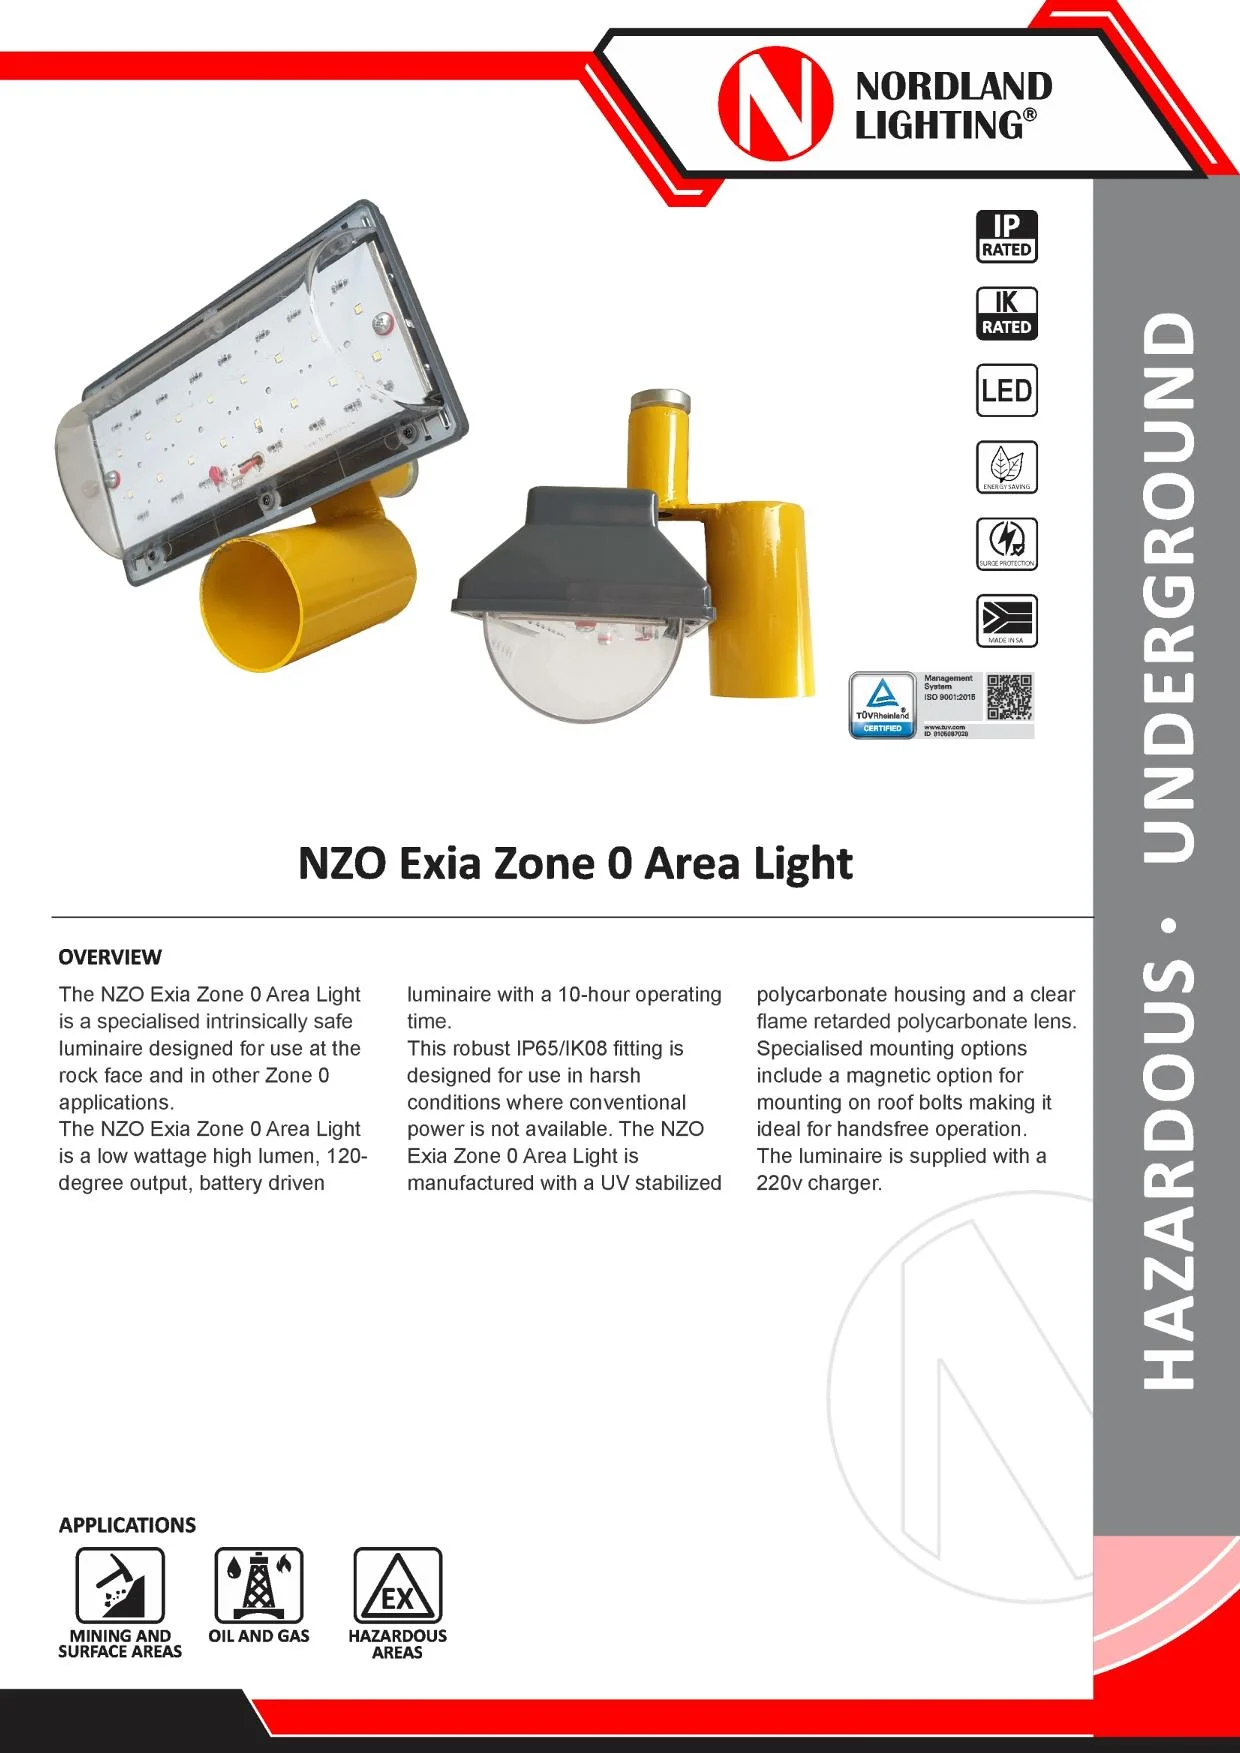 NL6 Nordland NZO Exia Zone 0 Area Light